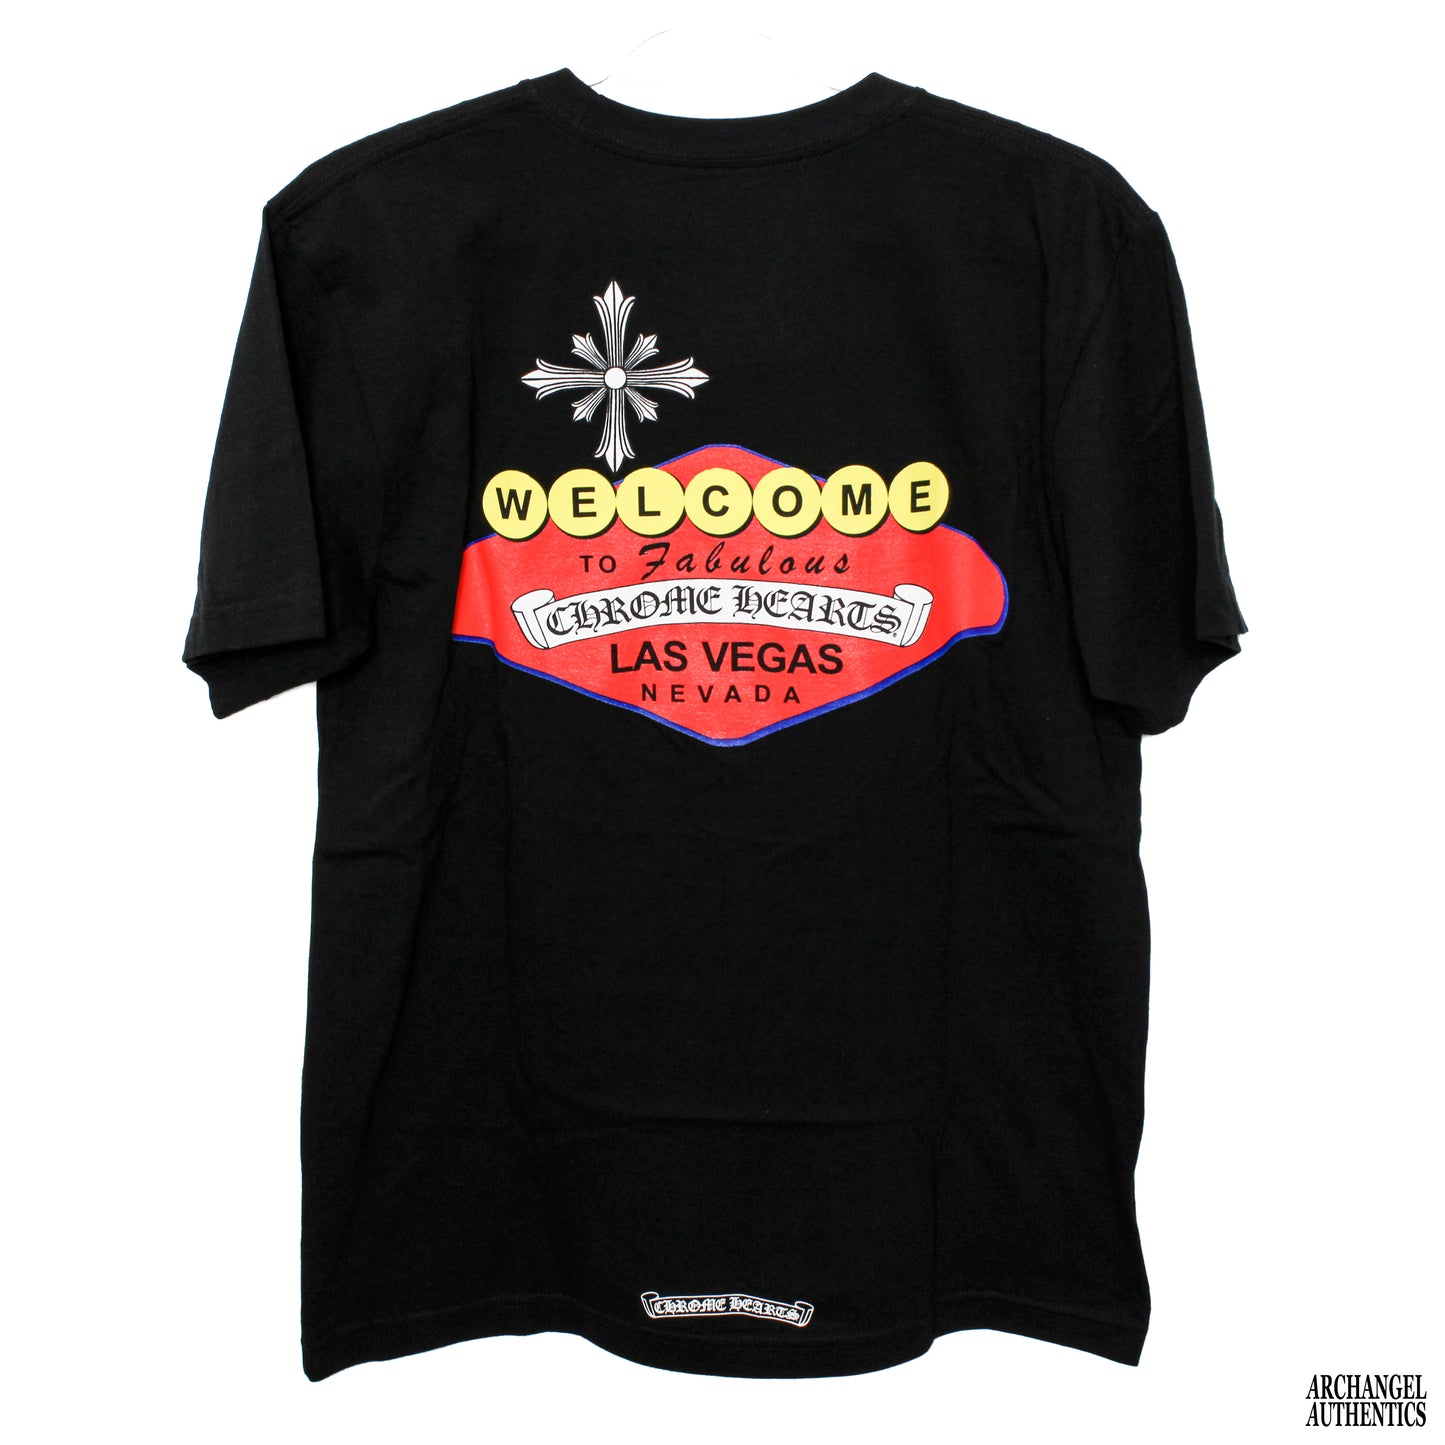 Chrome Hearts Las Vegas Exclusive T-Shirt Color Print